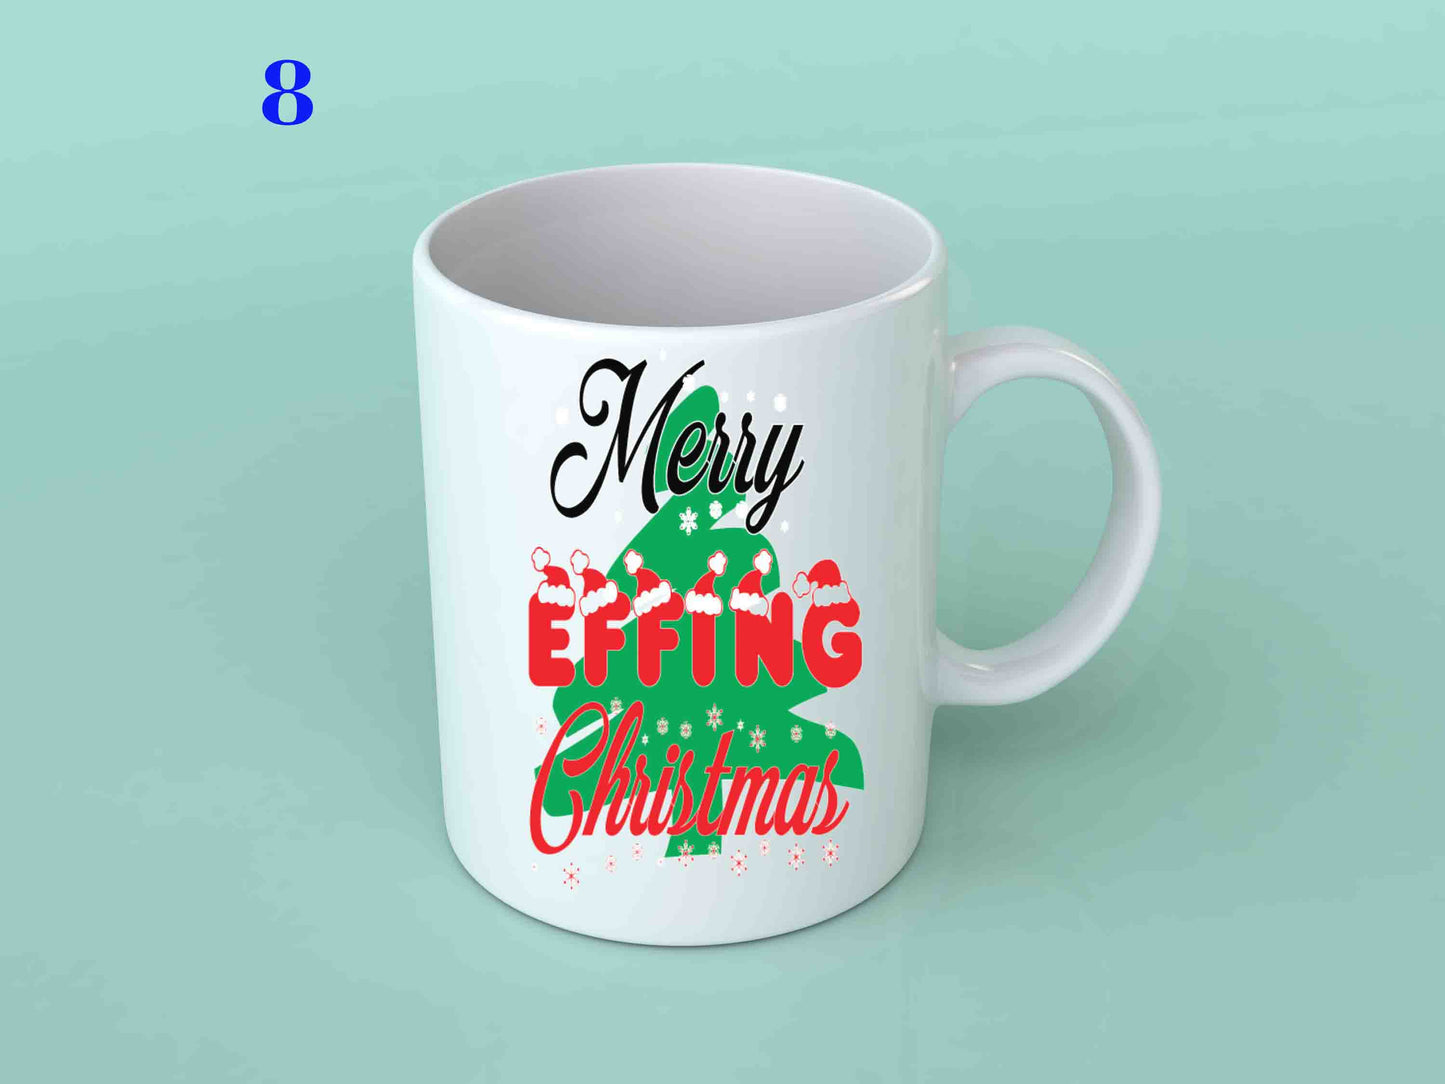 11oz Mug Christmas Mug